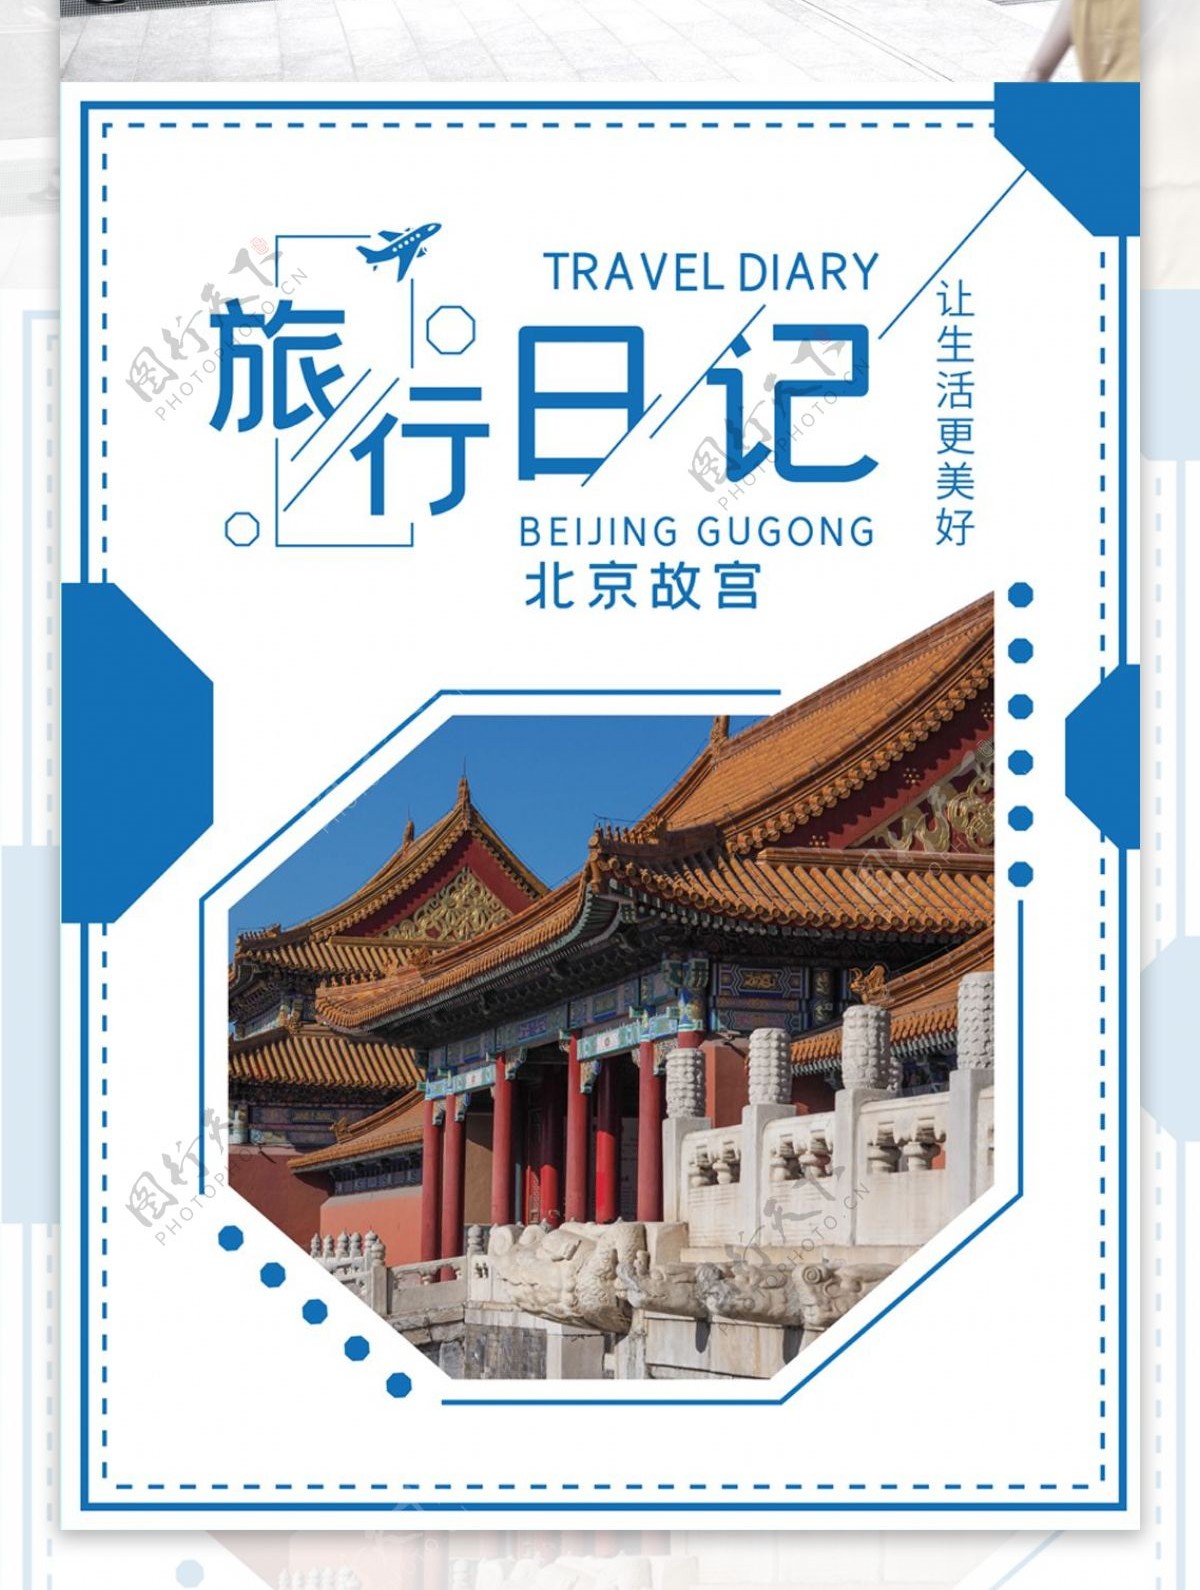 蓝色简约风格北京故宫旅行日记海报